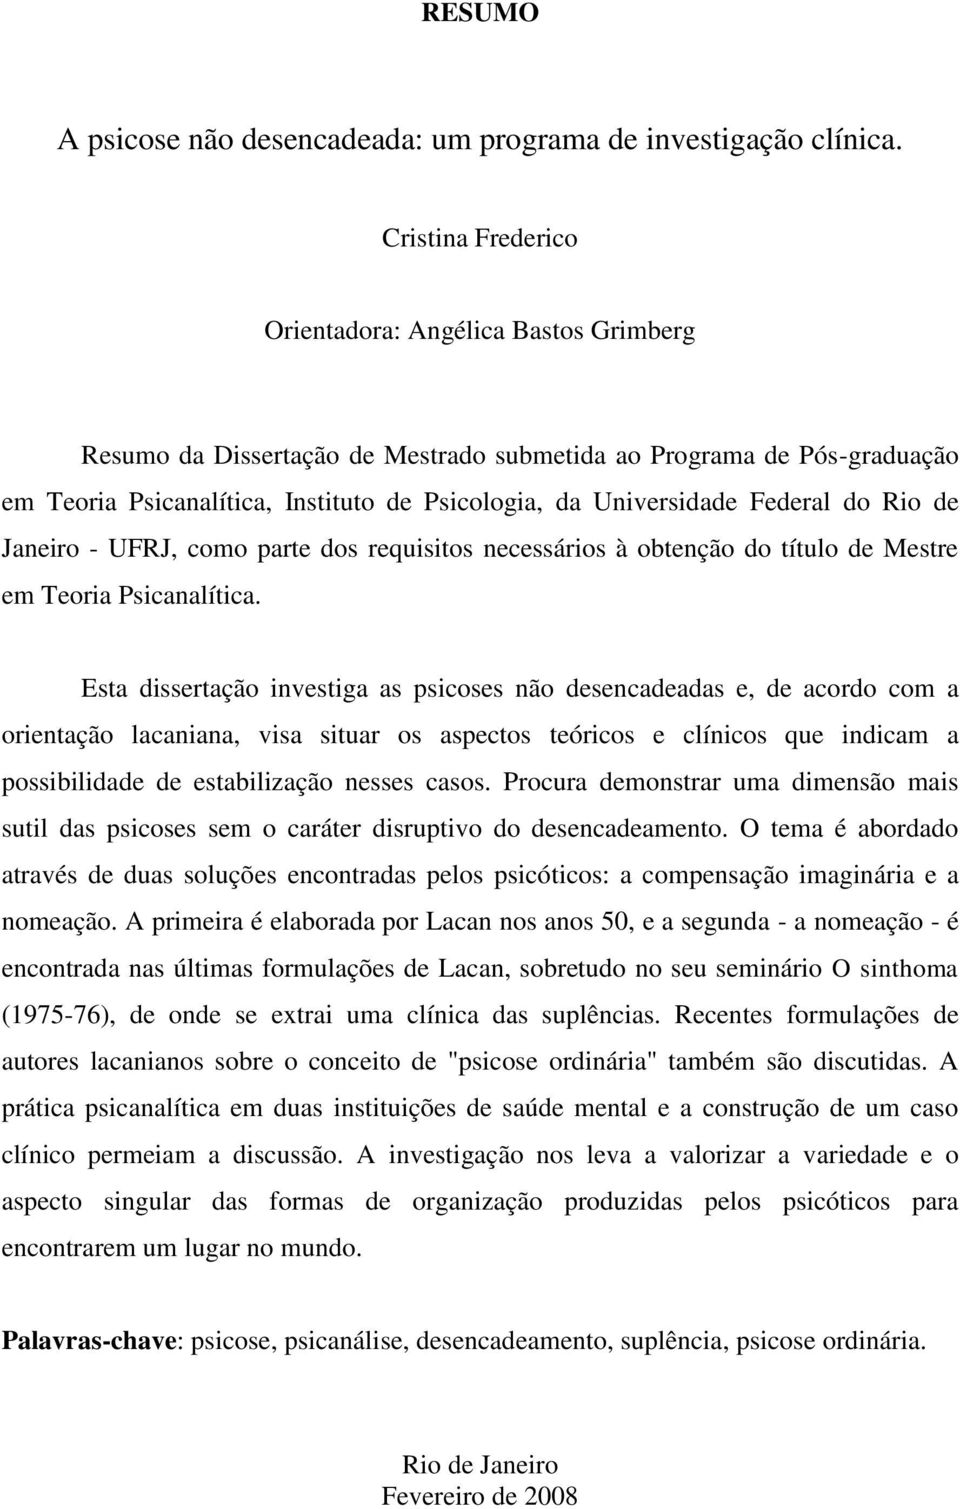 Federal do Rio de Janeiro - UFRJ, como parte dos requisitos necessários à obtenção do título de Mestre em Teoria Psicanalítica.